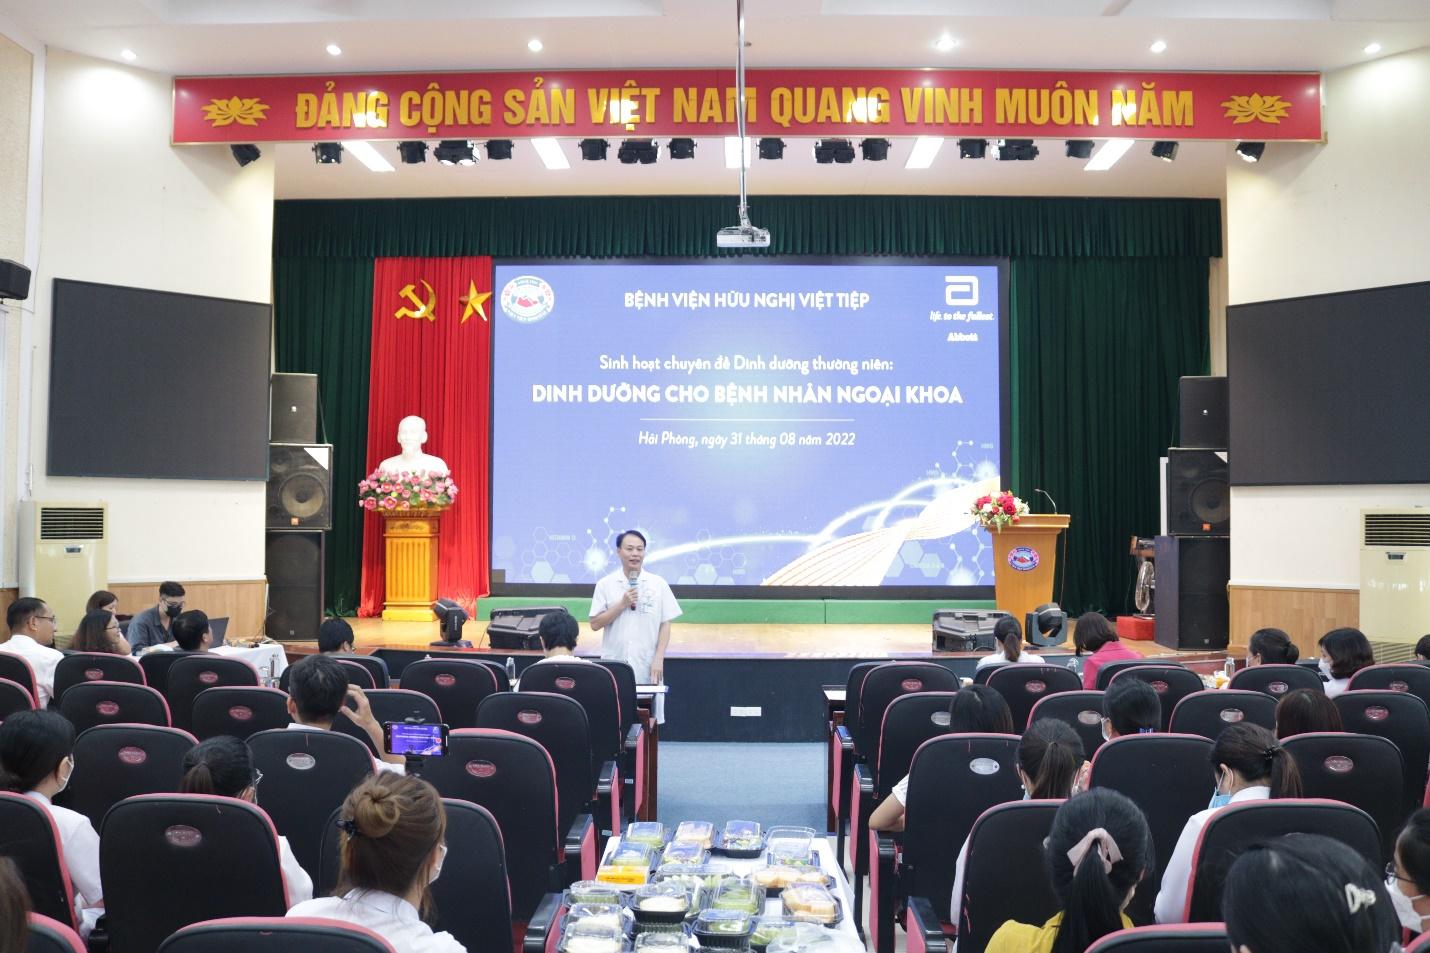 PGS.TS. Lê Minh Quang, Giám đốc Bệnh viện Hữu nghị Việt Tiệp, phát biểu tại buổi sinh hoạt chuyên môn